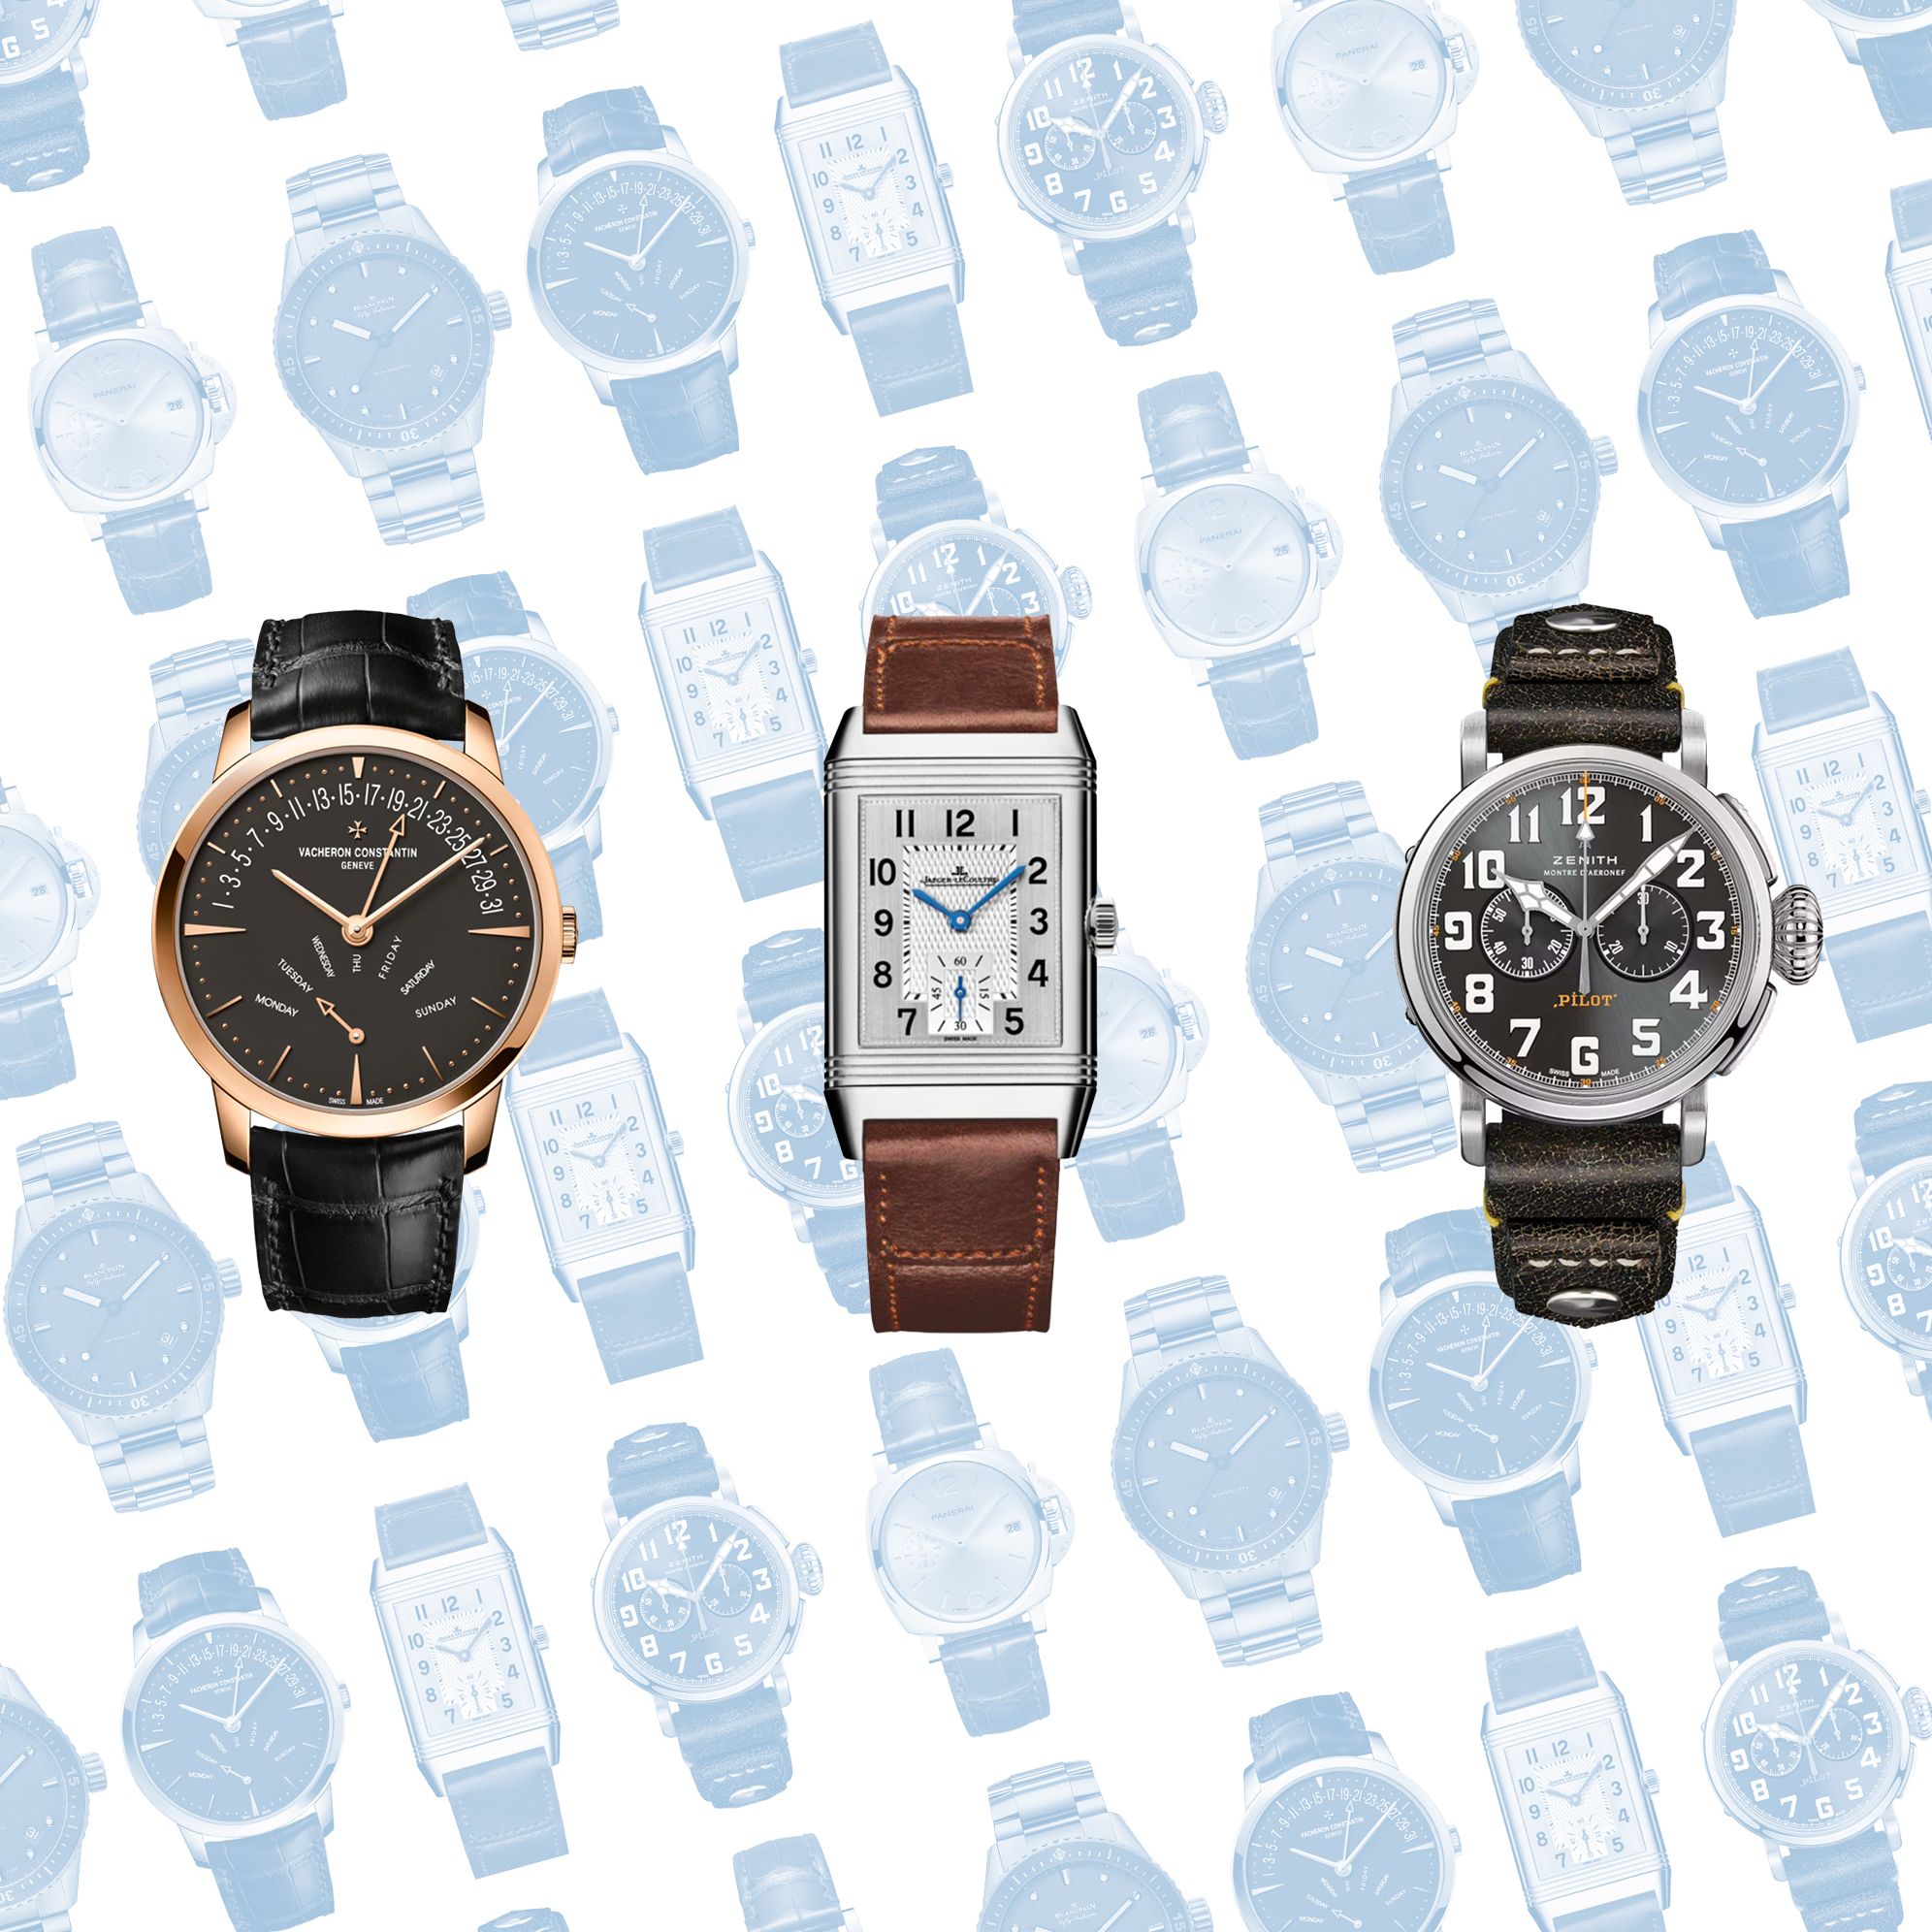 Vergelding Bedrijf verdieping 20+ Best Watch Brands for 2023 - Top Luxury Watch Brands to Know